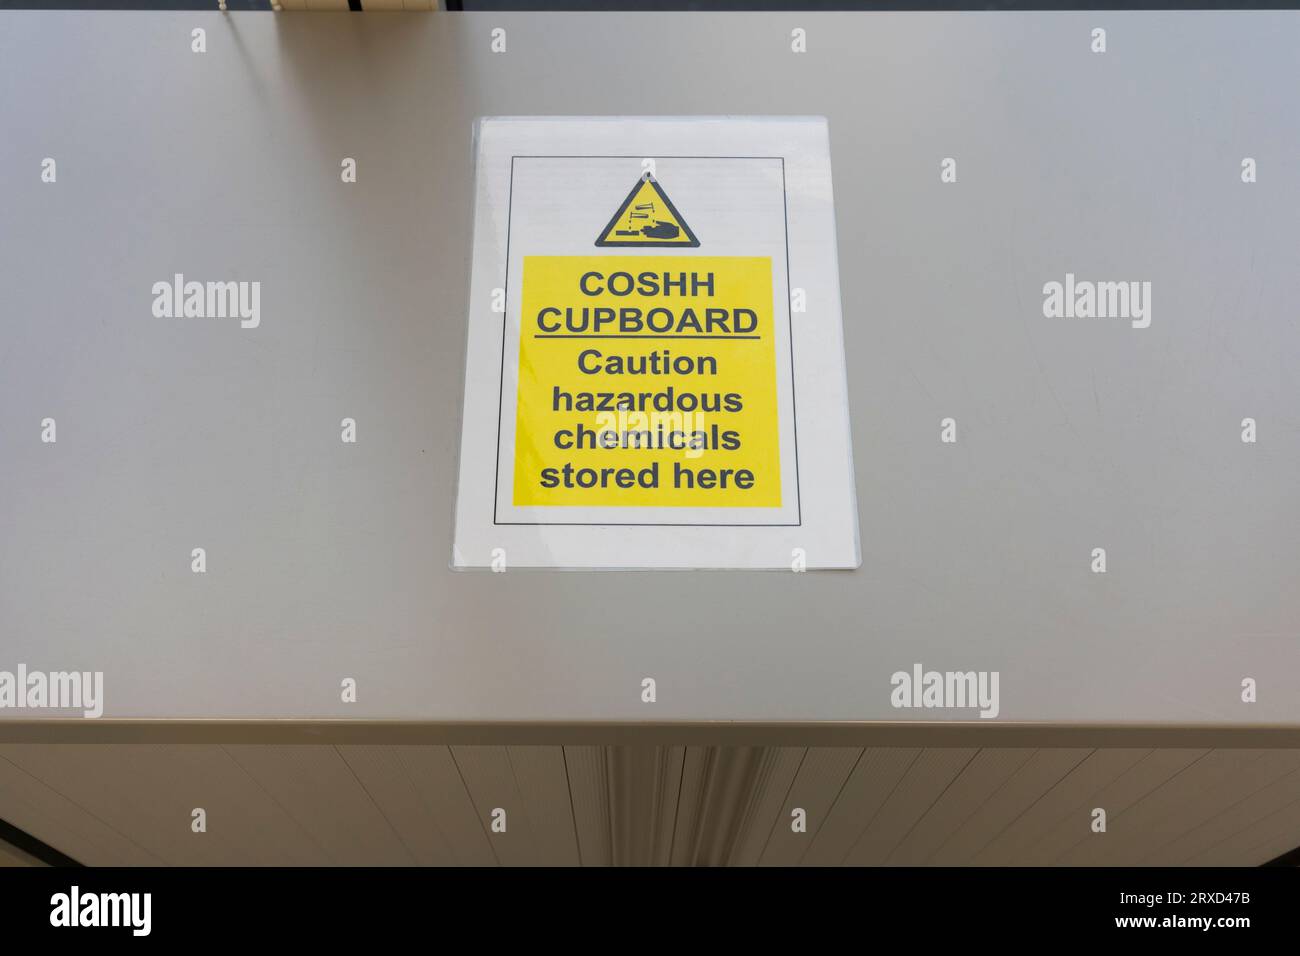 Ein Warnhinweis für einen COSHH-Schrank in einem britischen Büro (Control of Substances Hazardous to Health) - für gefährliche Chemikalien und Substanzen am Arbeitsplatz Stockfoto